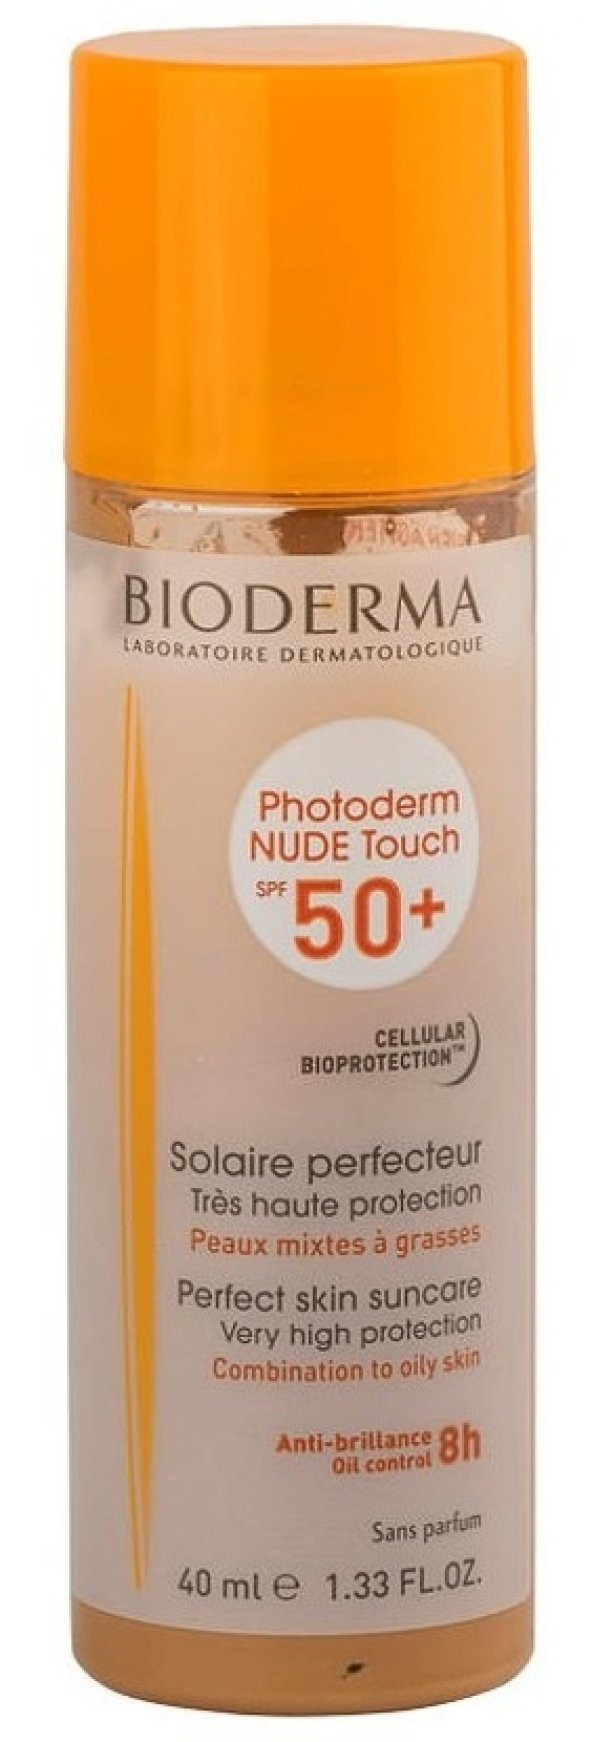 Bioderma Photoderm Nude Touch Sfp 50+ Golden skt:02/020